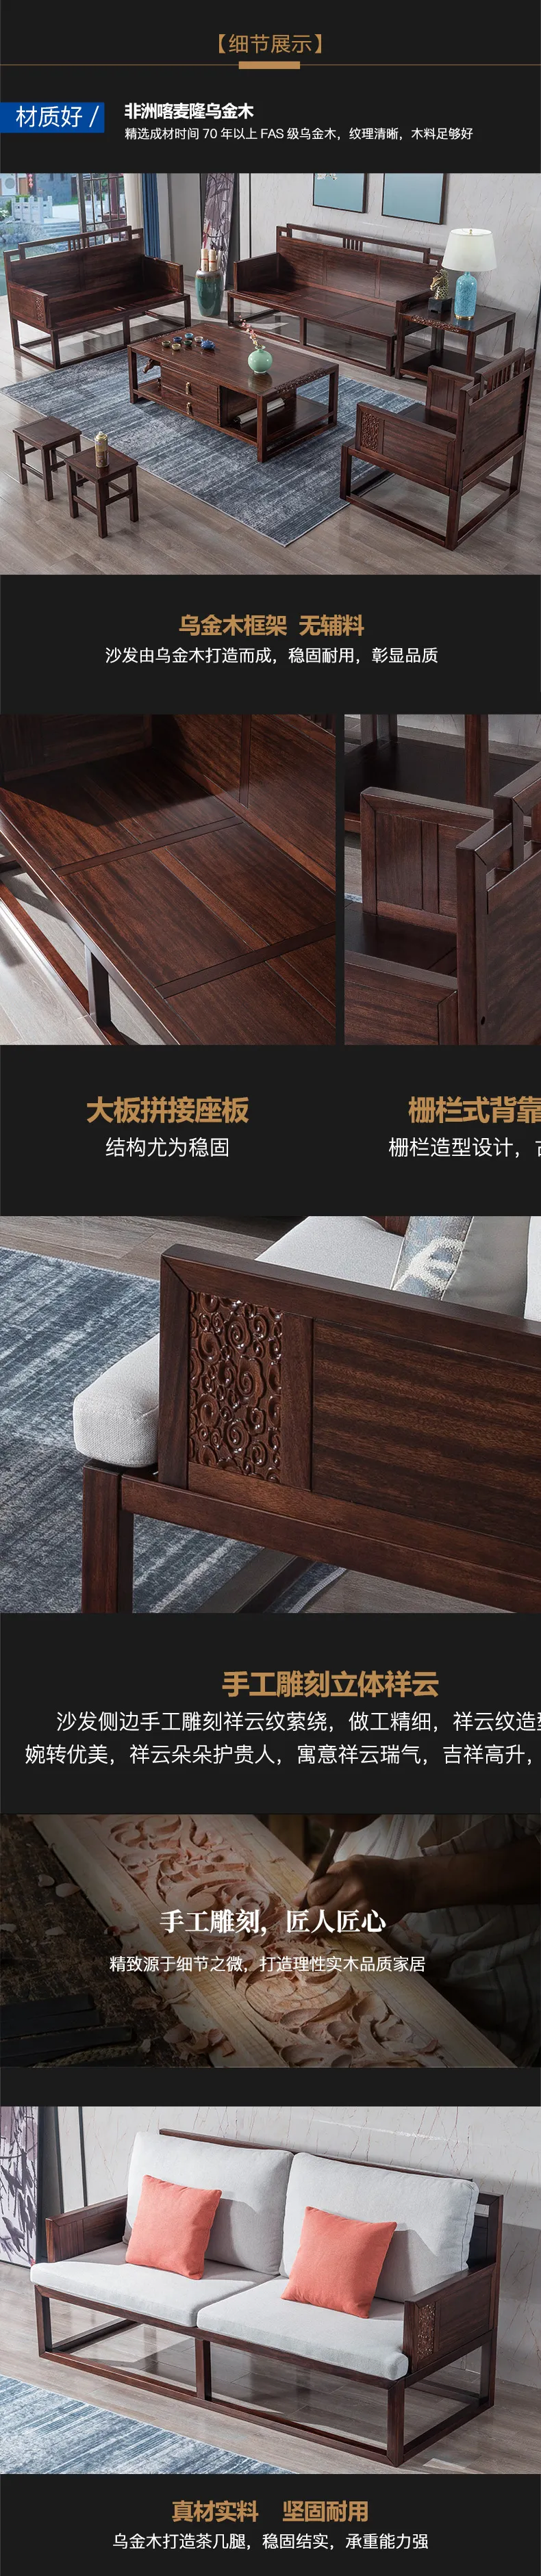 华松居 新中式乌金木大户型客厅家具全实木布艺组合沙发 #2001(图3)